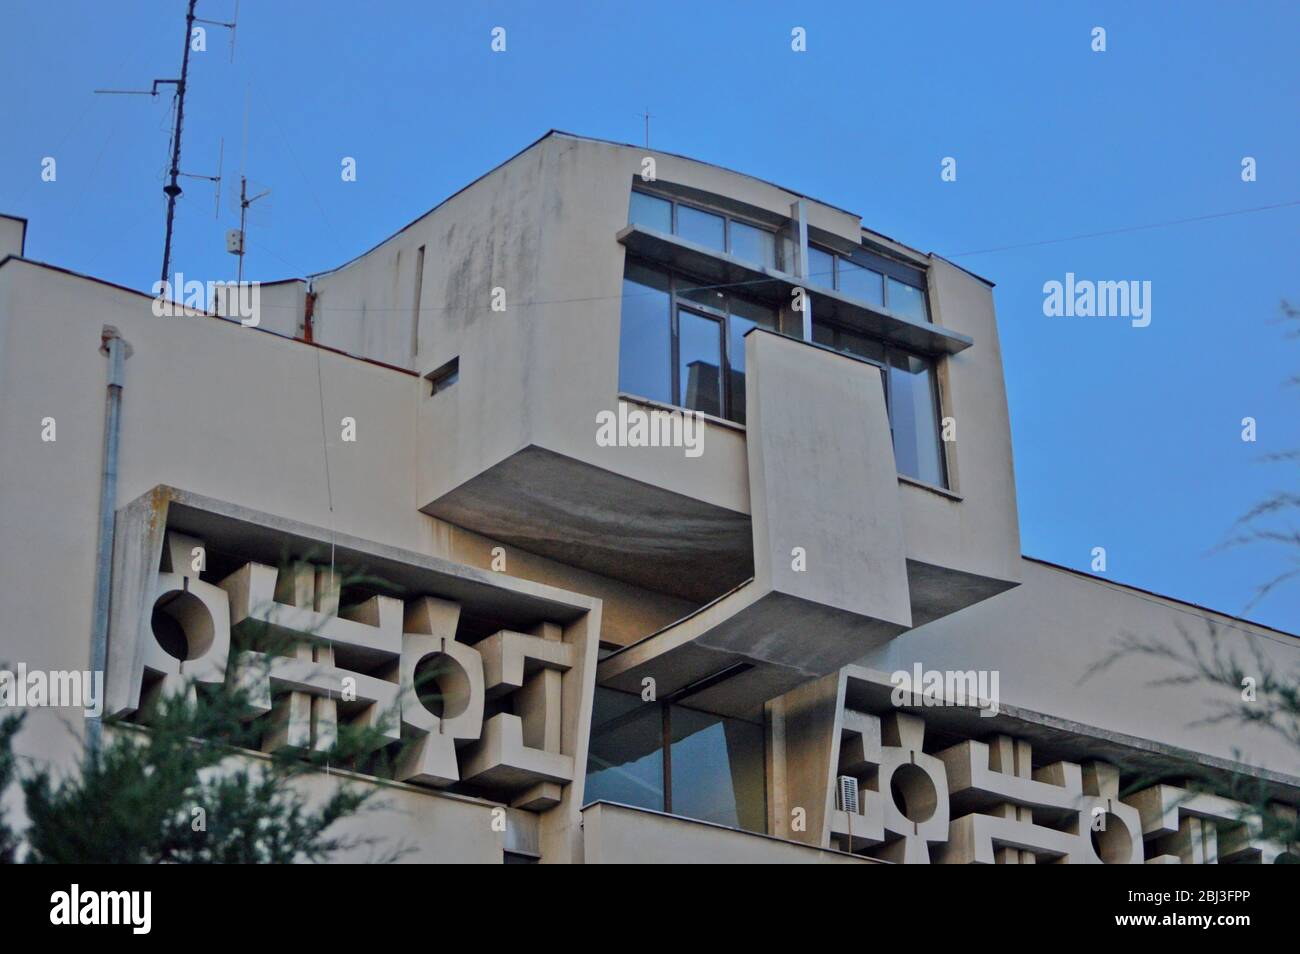 Die Fassade eines alten kommunistischen Gebäudes, gerade Linien und grauer Beton beschreiben am besten den architektonischen Stil Osteuropas während des Kommunismus Stockfoto